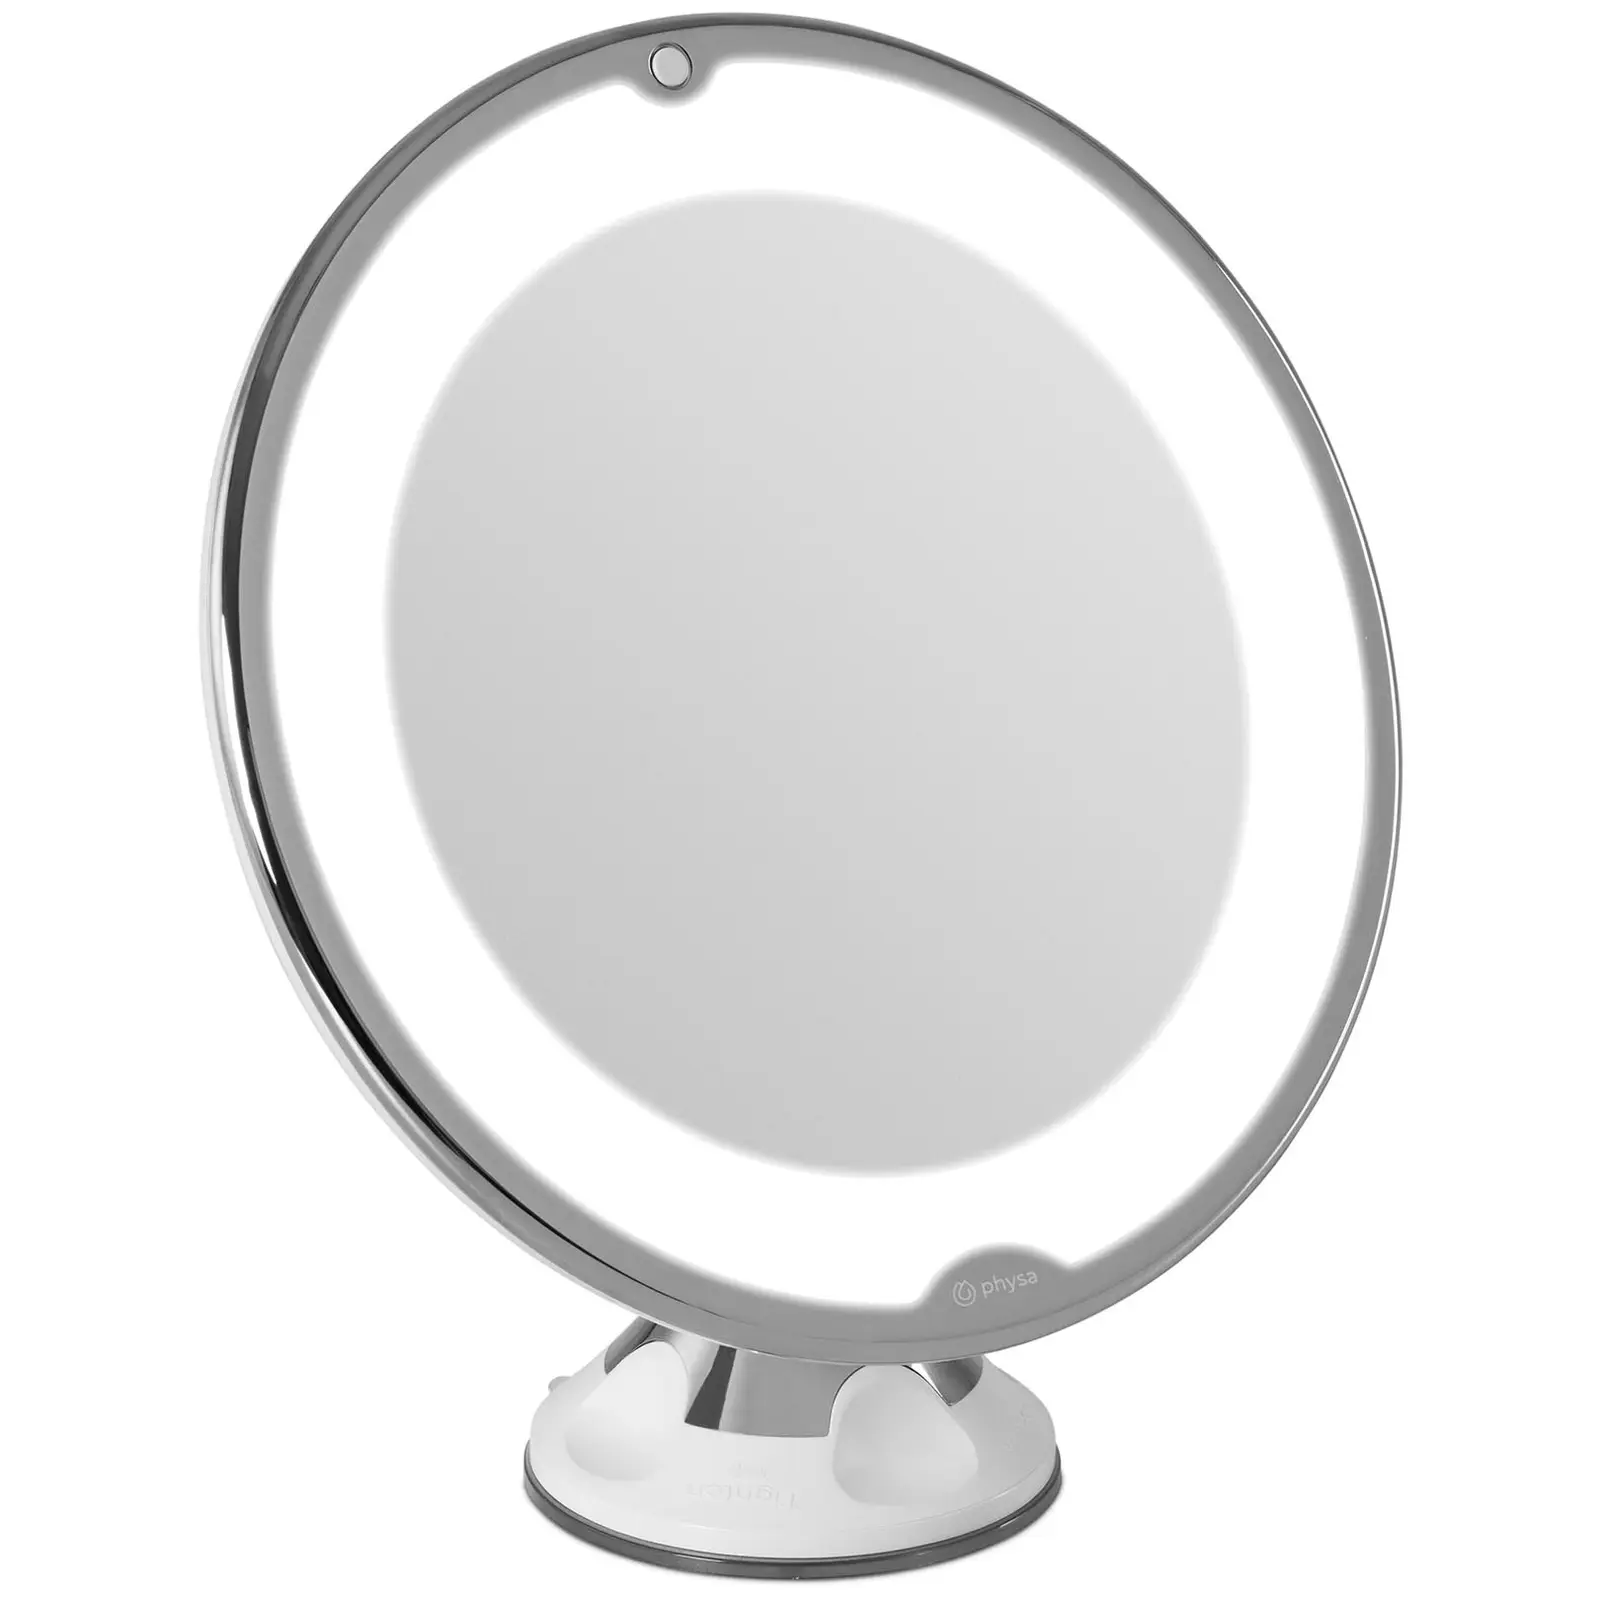 Espejo de maquillaje - blanco - 10 aumentos - 10 LEDs - redondo